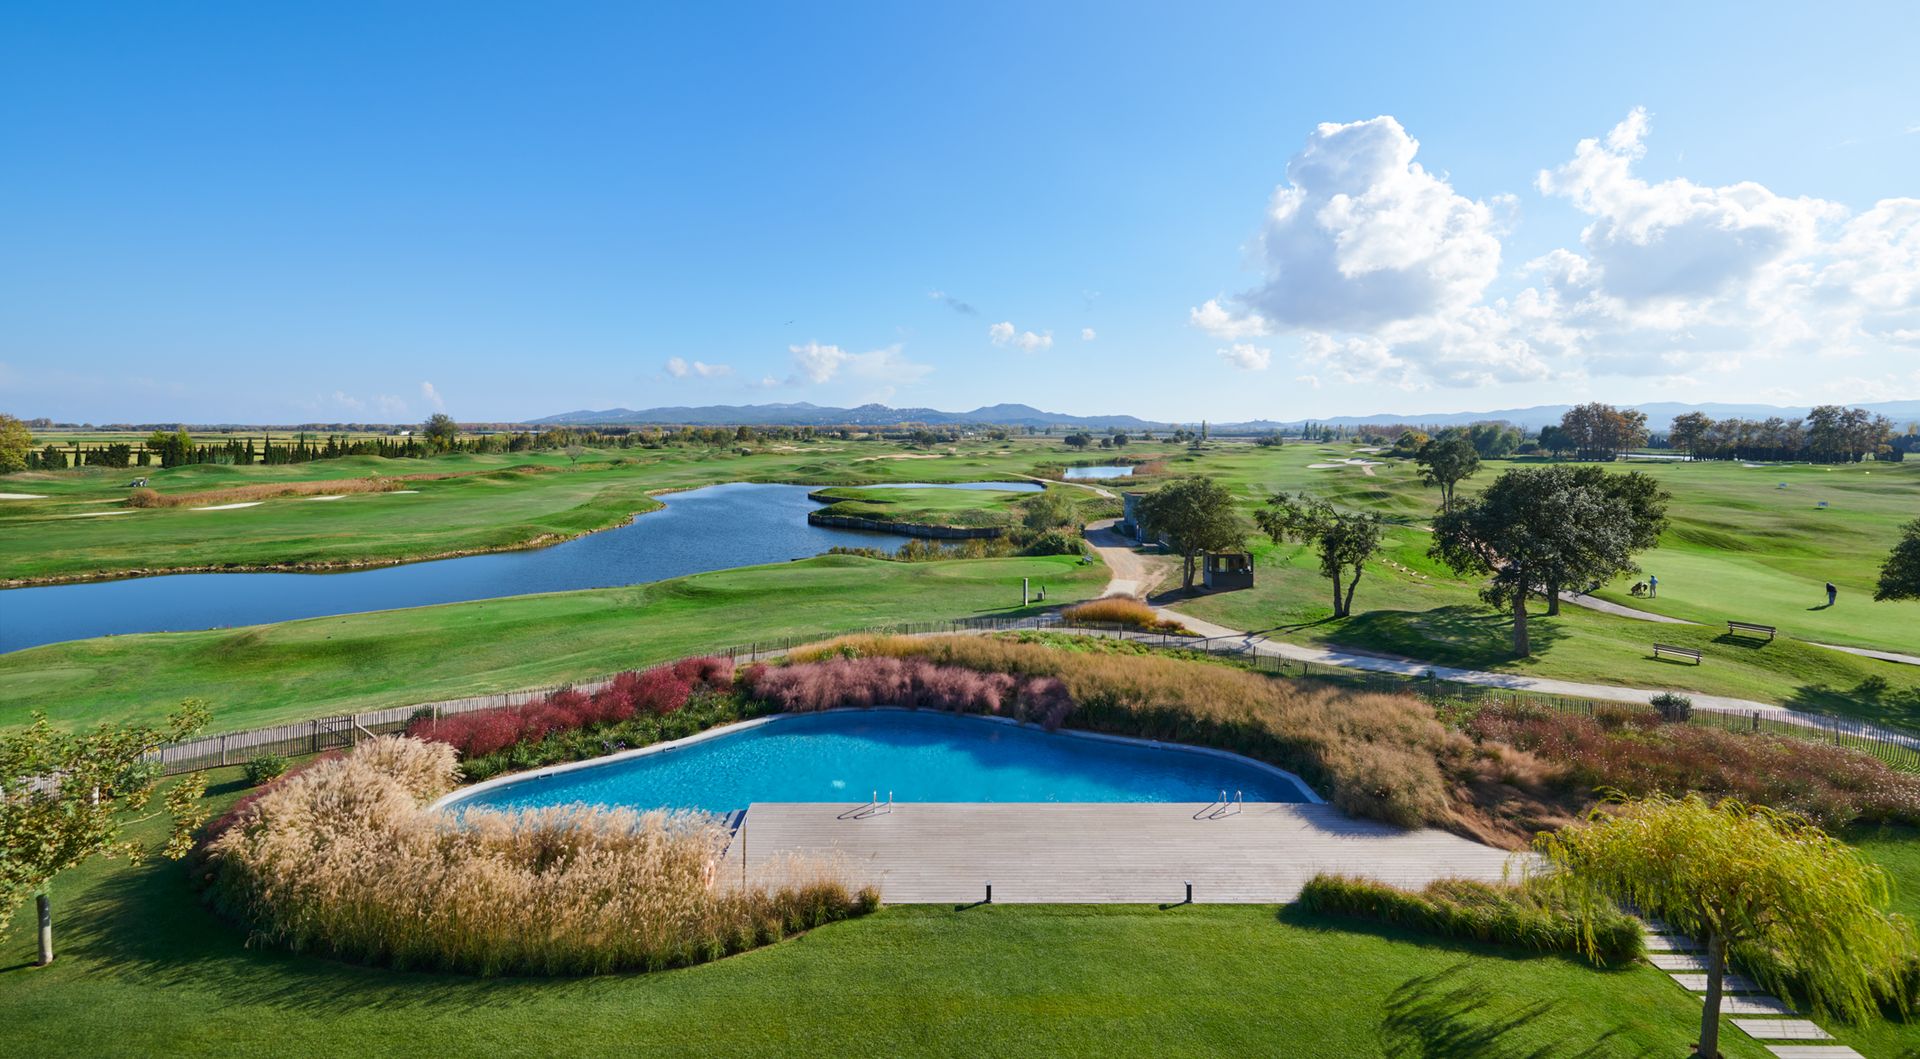 Empordà Golf Club, a reinvigorated top resort | Leading Courses